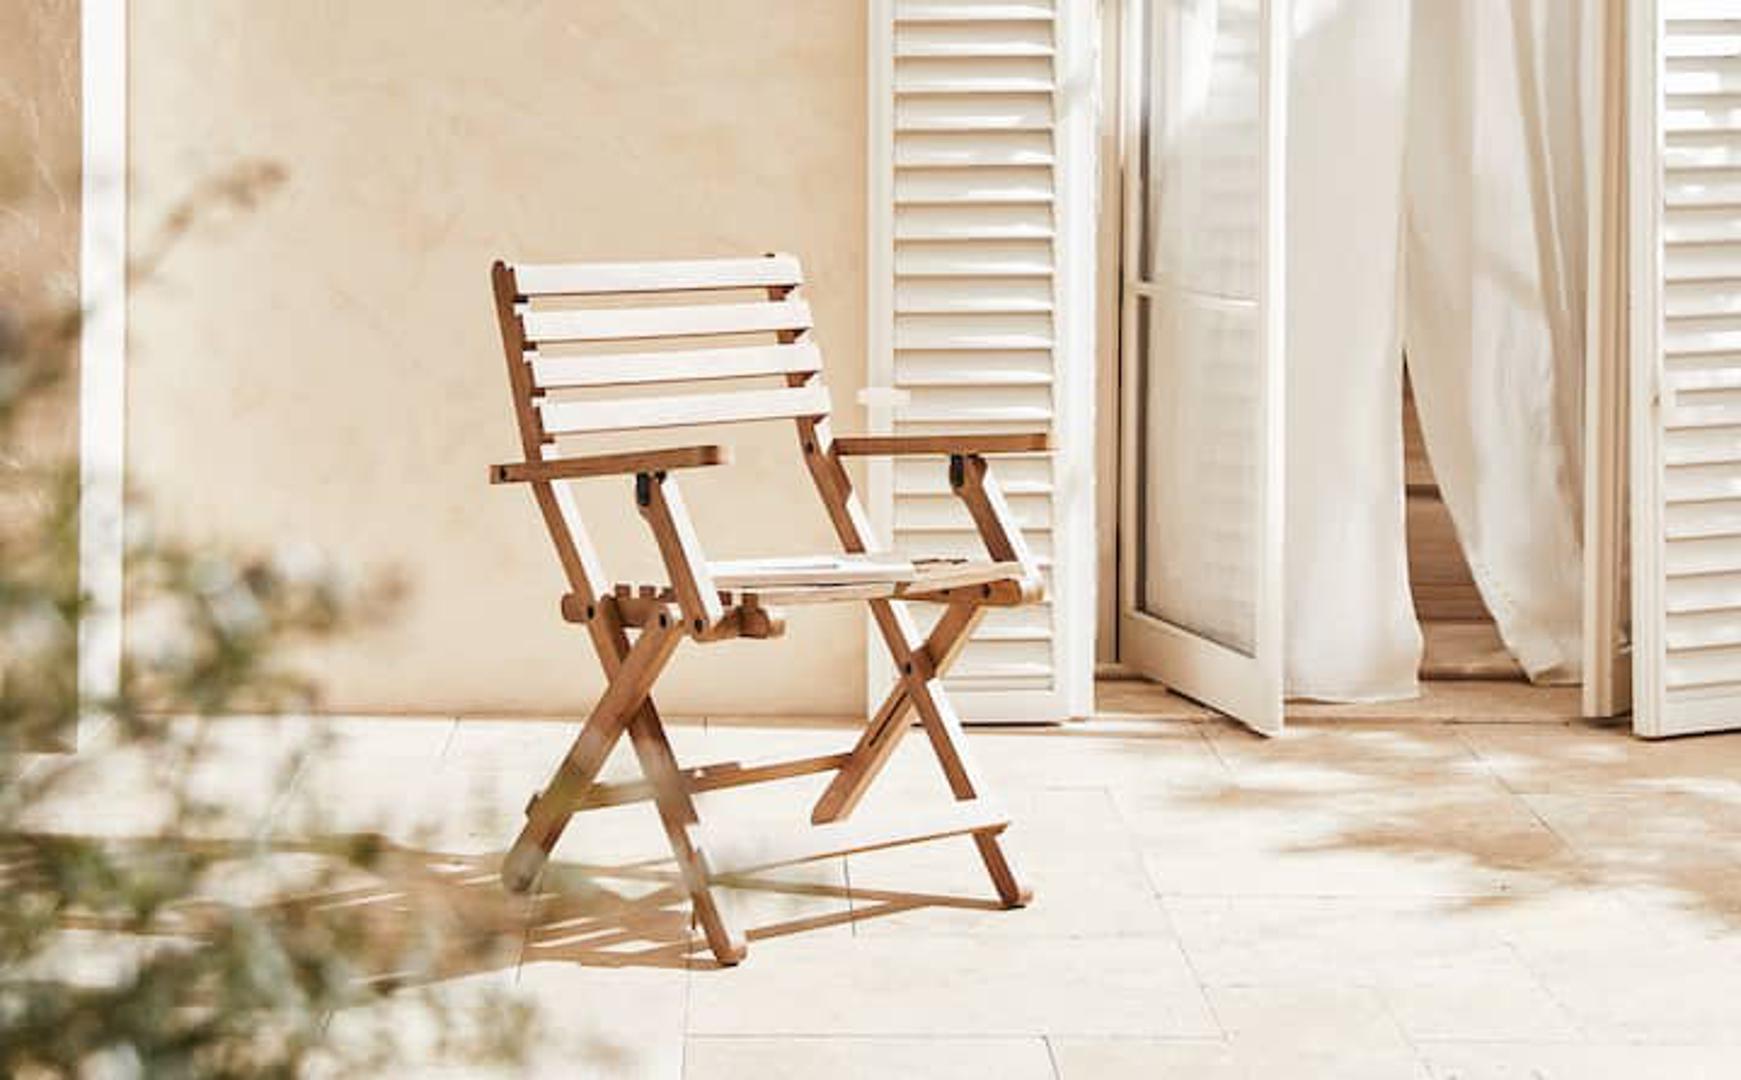 Sklopivi stolac od drvenog manga odličan je izbor i za balkon i terasu i za interijer (1299 kn)